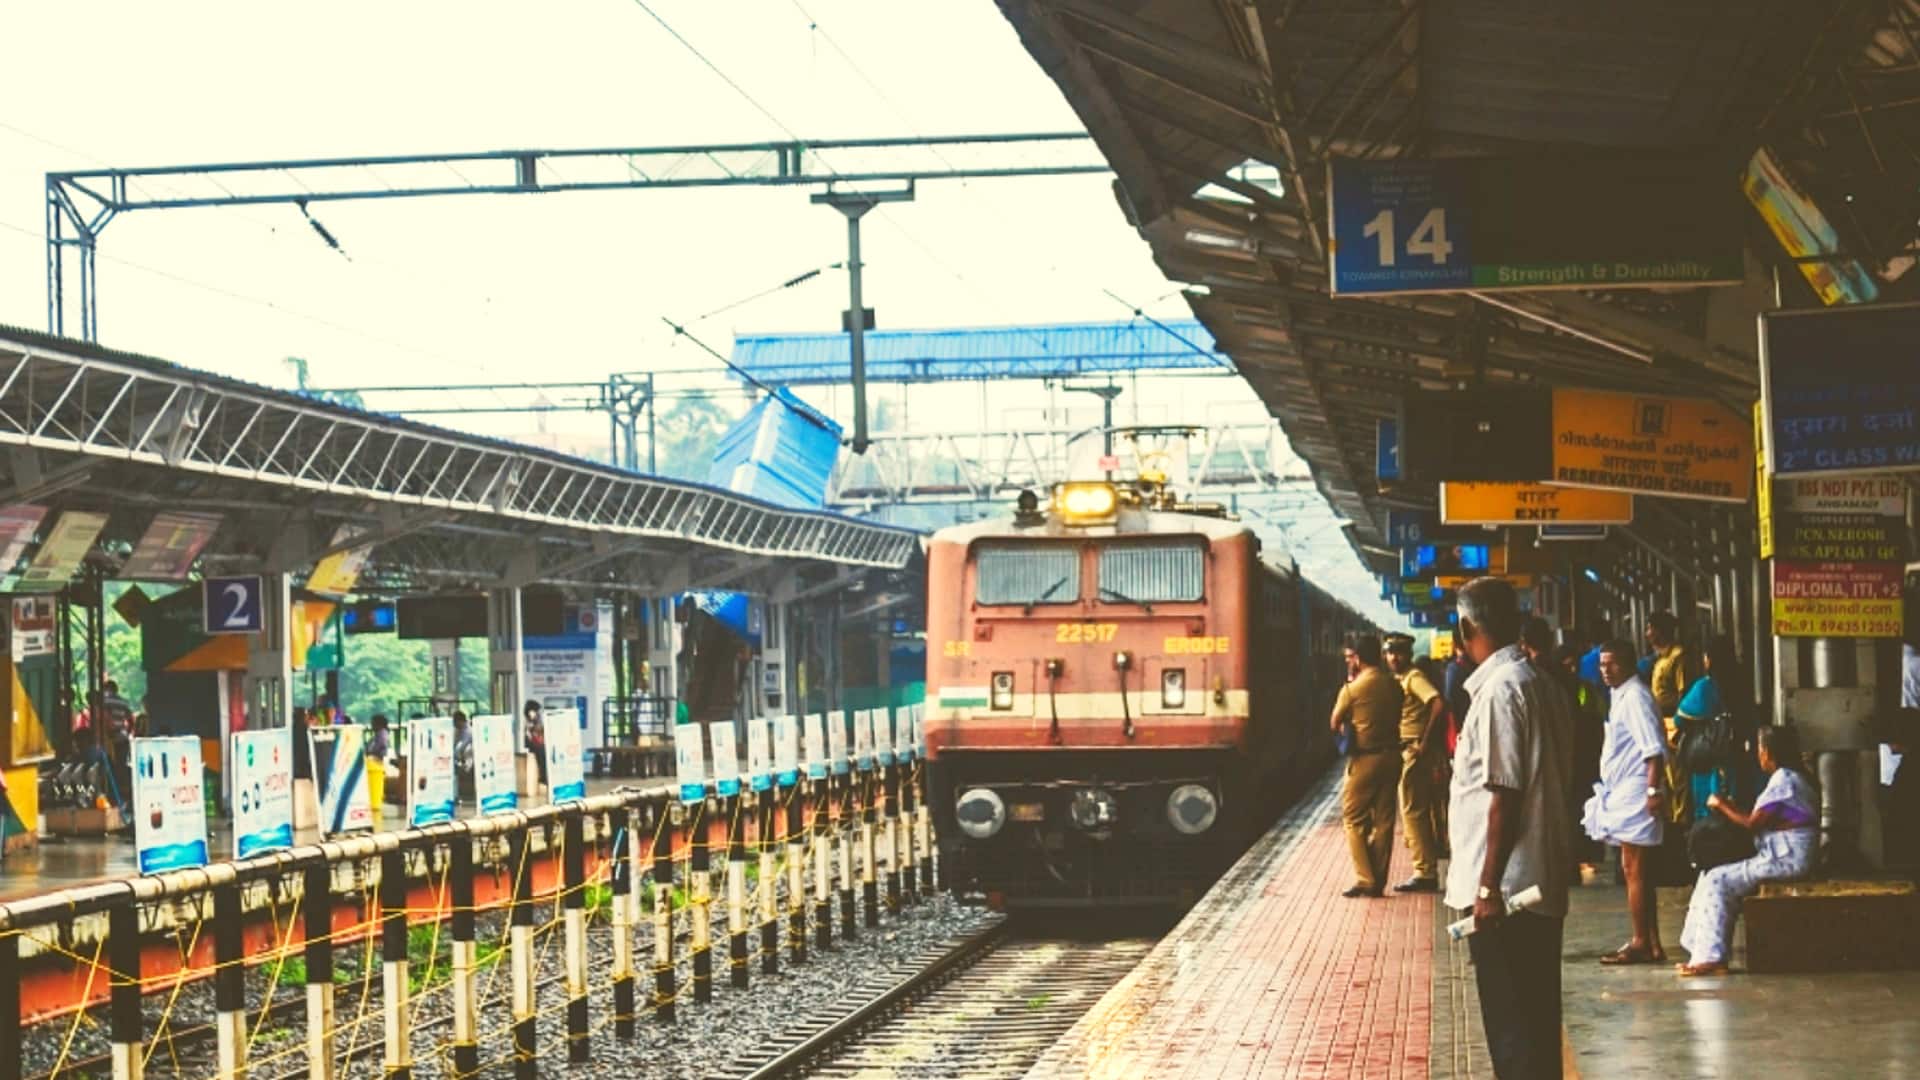 कोहरे के कारण भारतीय रेलवे की 25 ट्रेनें मार्च तक निरस्त, देखें सूची